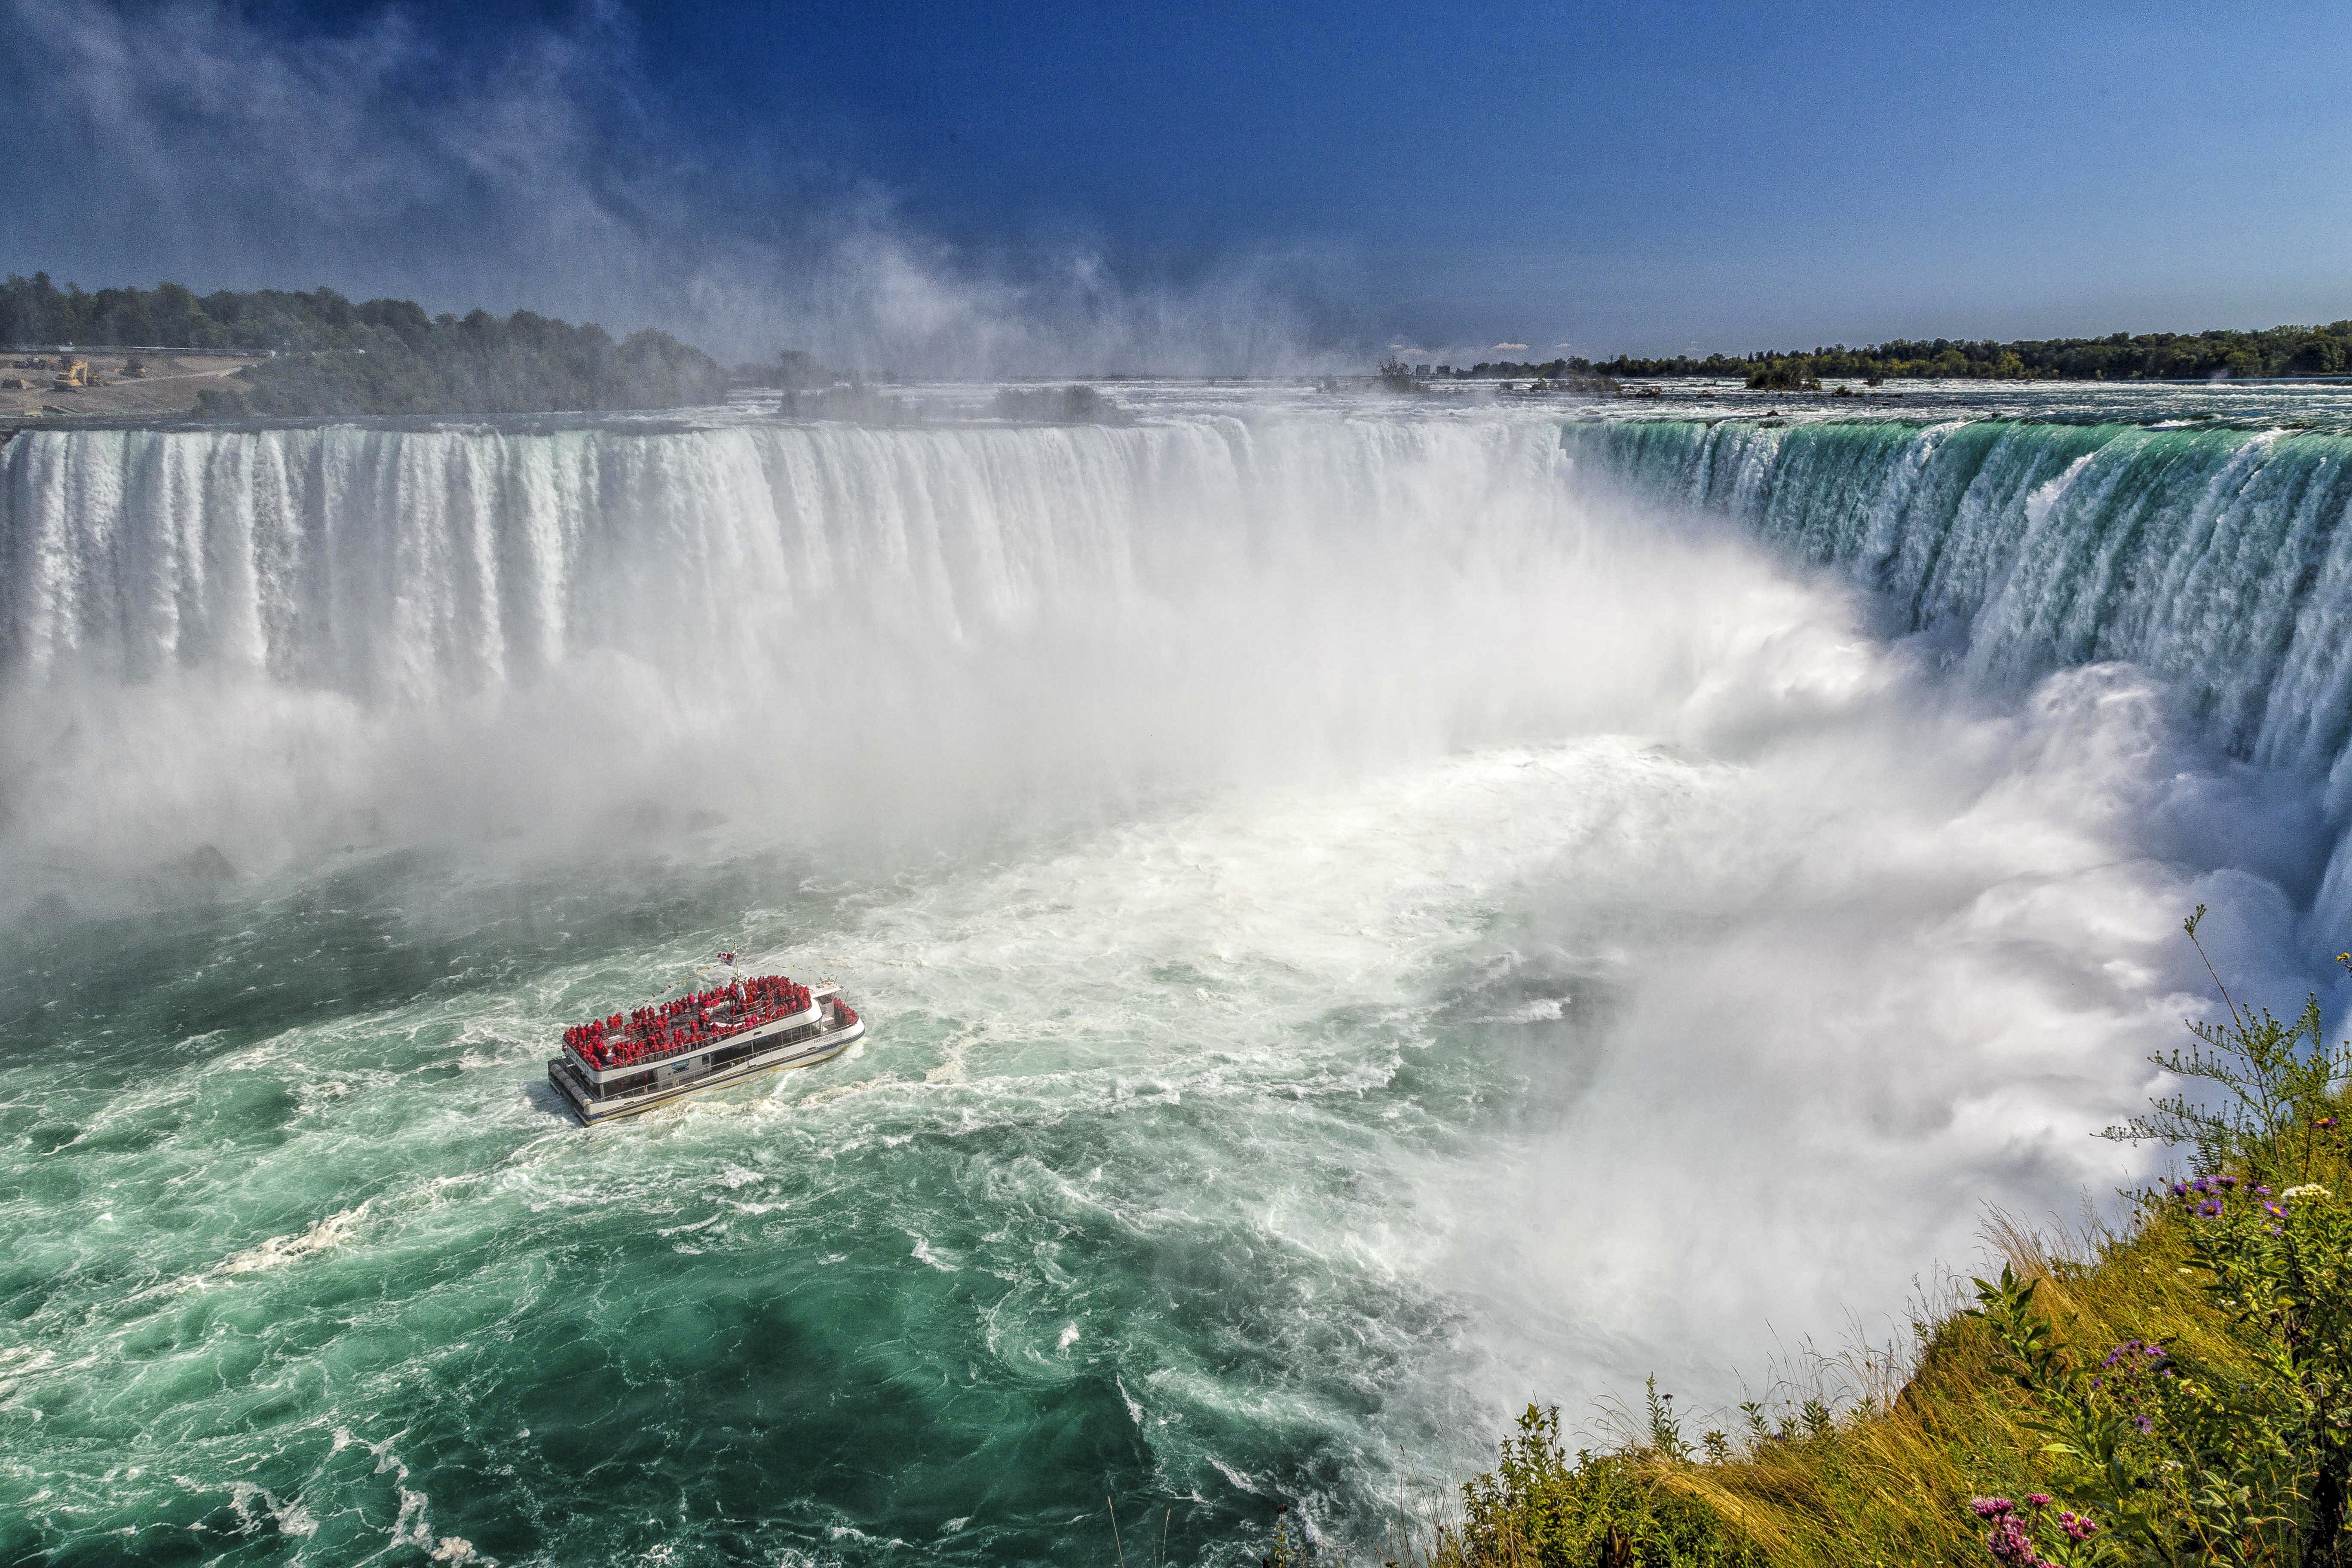 Американский водопад расположенный недалеко от города торонто. Ниагарский водопад Канада. США Ниагара водопад. Ниагарский водопад - Niagara Falls. Ниагарский водопад (Ниагара-Фолс, провинция Онтарио).